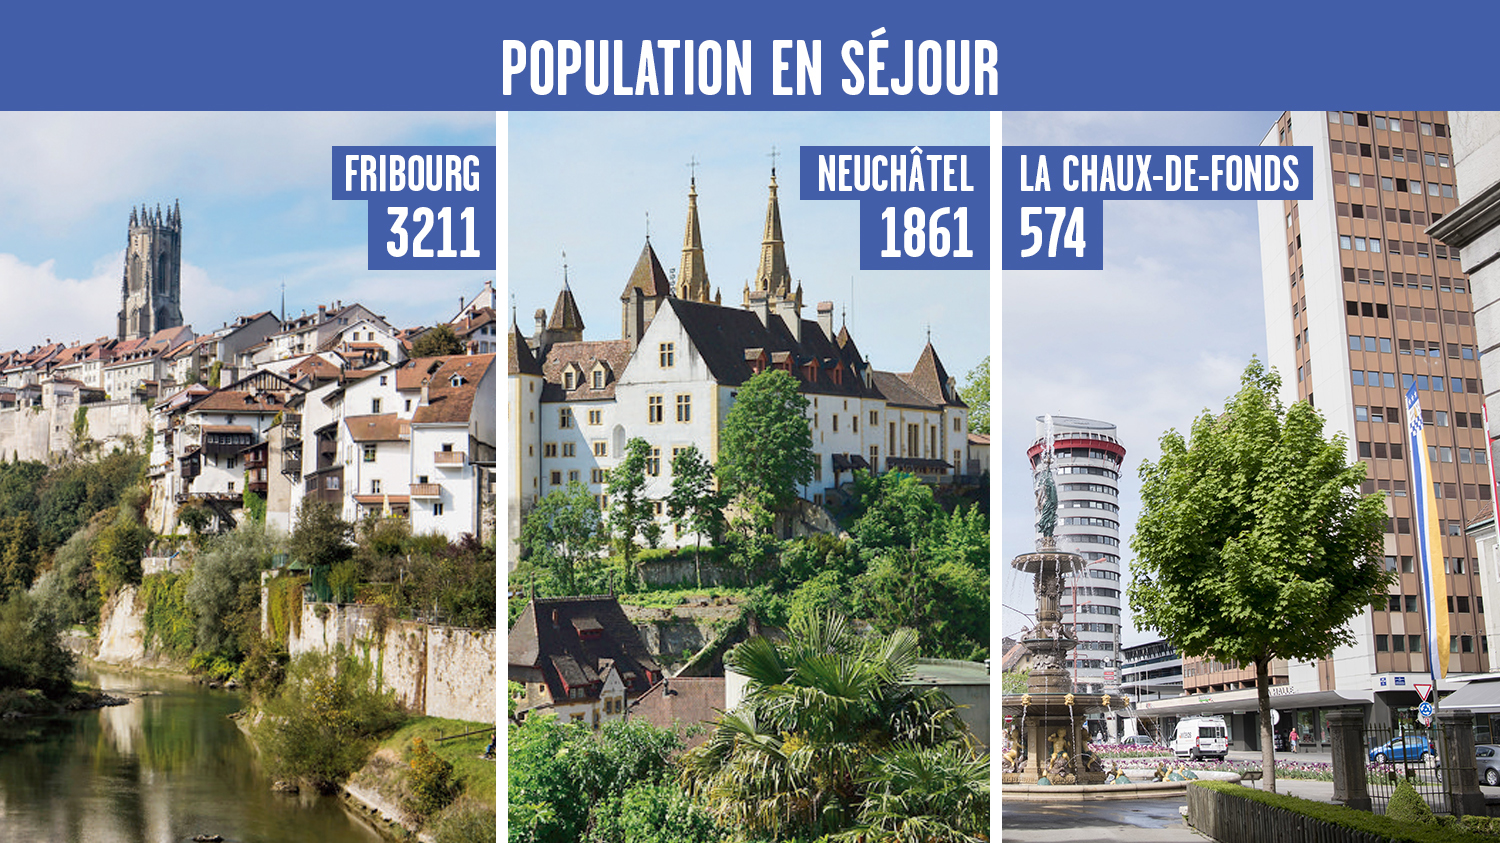 La population en séjour à Fribourg, Neuchâtel et La Chaux-de-Fonds